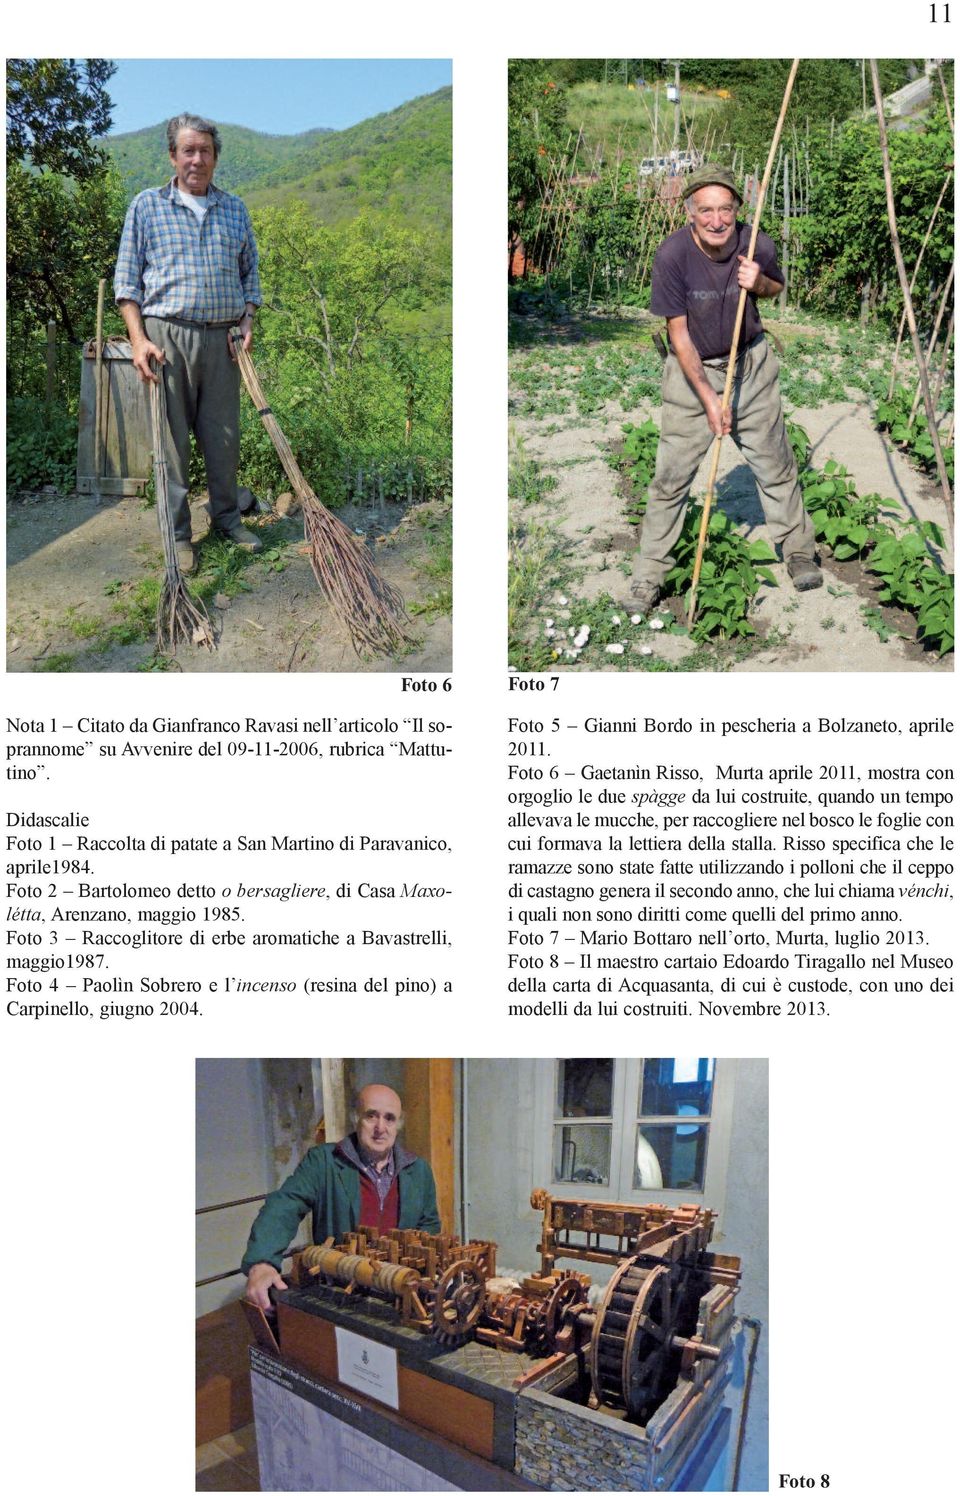 Foto 3 Raccoglitore di erbe aromatiche a Bavastrelli, maggio1987. Foto 4 Paolìn Sobrero e l incenso (resina del pino) a Carpinello, giugno 2004.